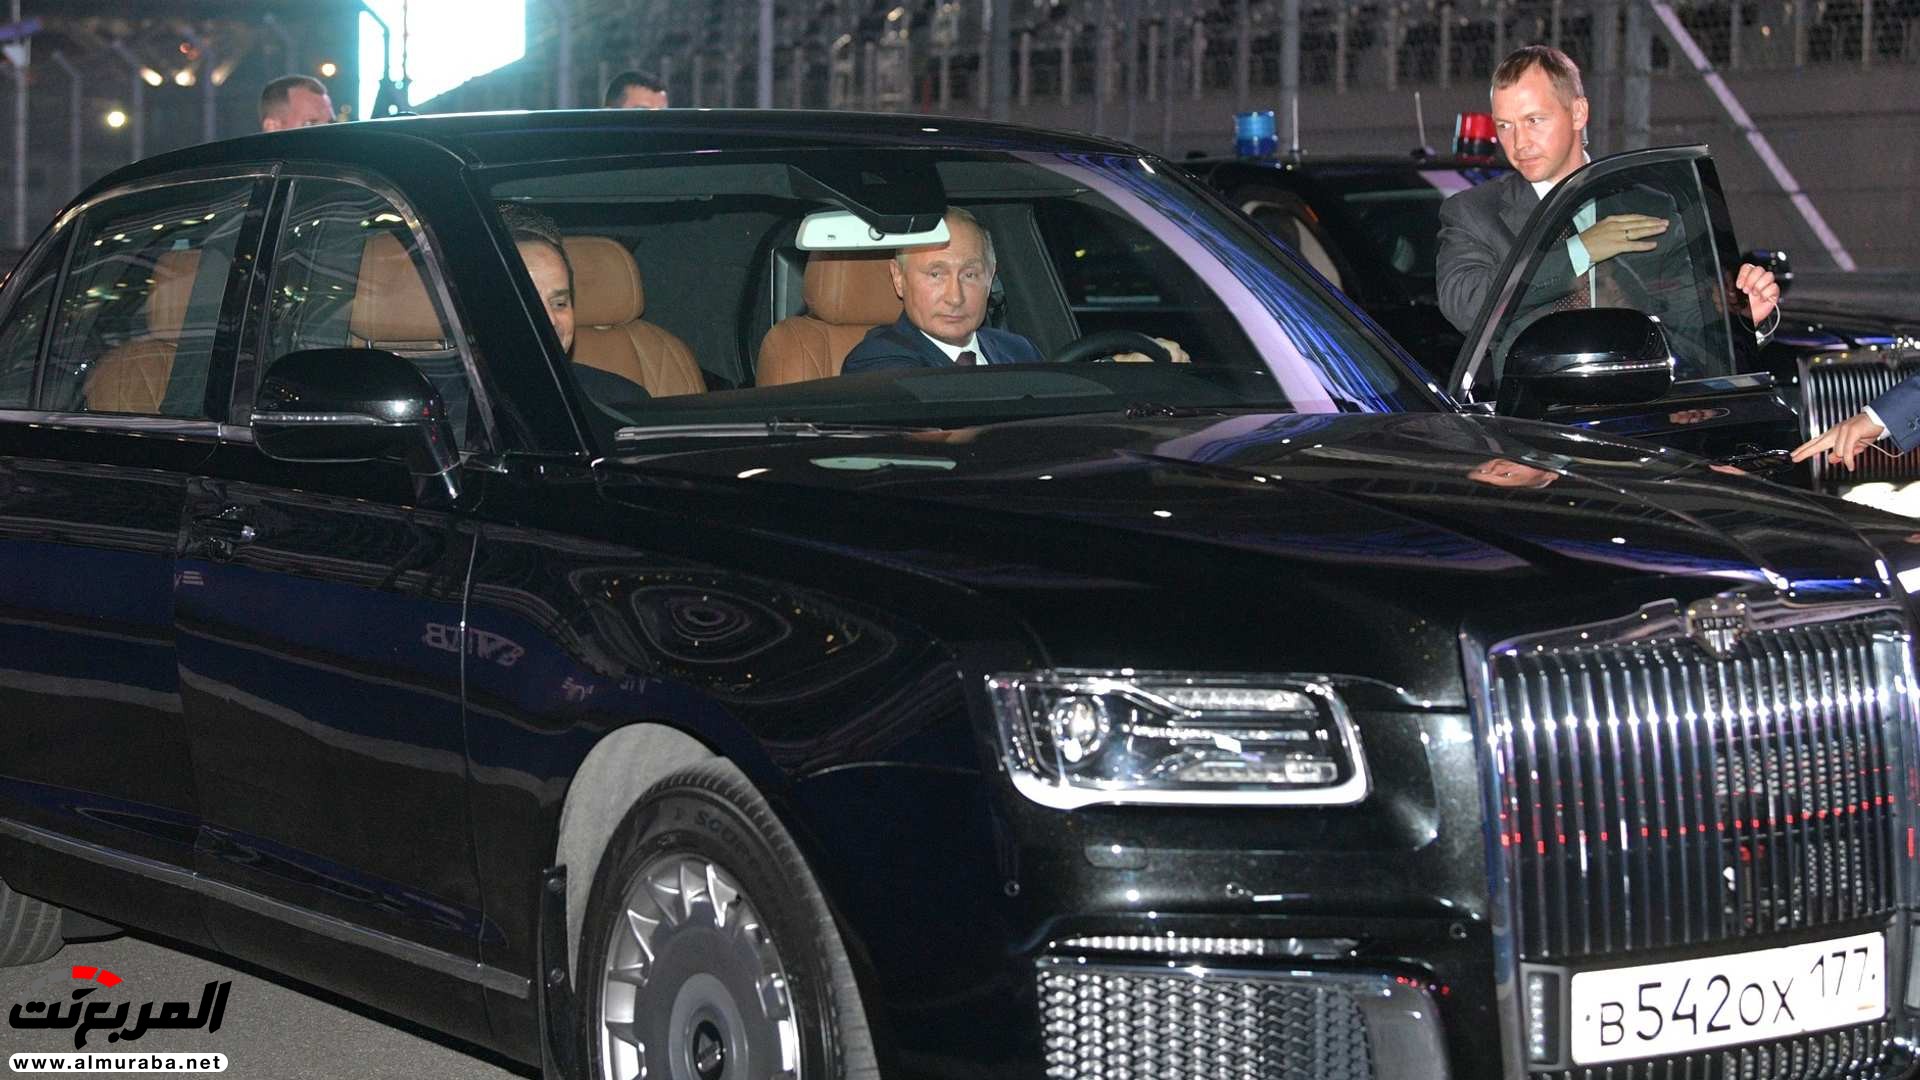 "بالصور" بوتين يصطحب السيسي في جولة داخل ليموزين يقودها بنفسه 21